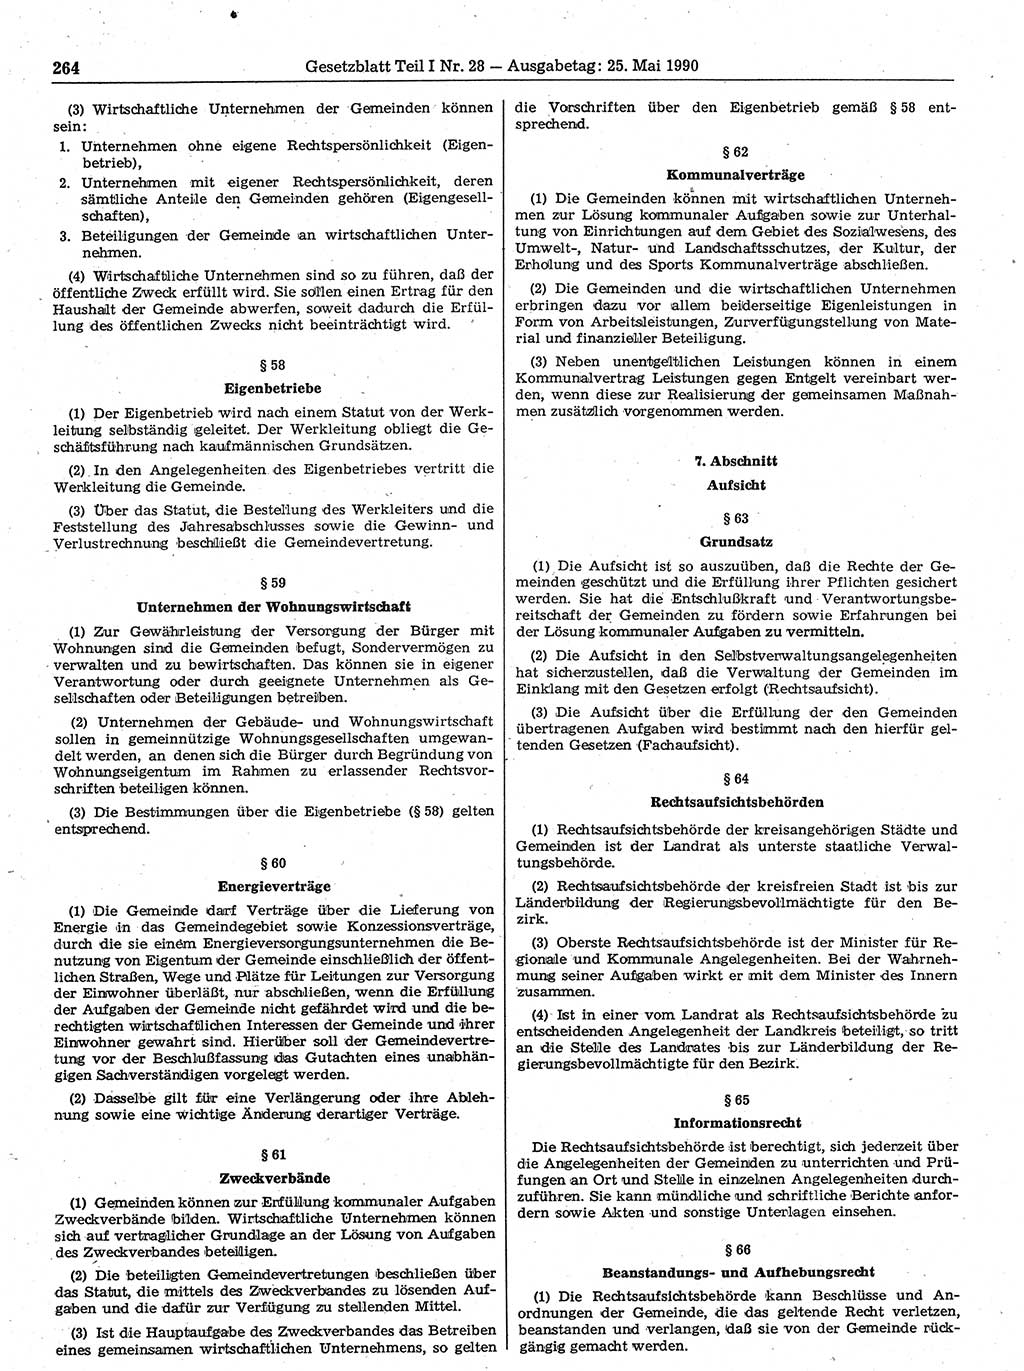 Gesetzblatt (GBl.) der Deutschen Demokratischen Republik (DDR) Teil Ⅰ 1990, Seite 264 (GBl. DDR Ⅰ 1990, S. 264)